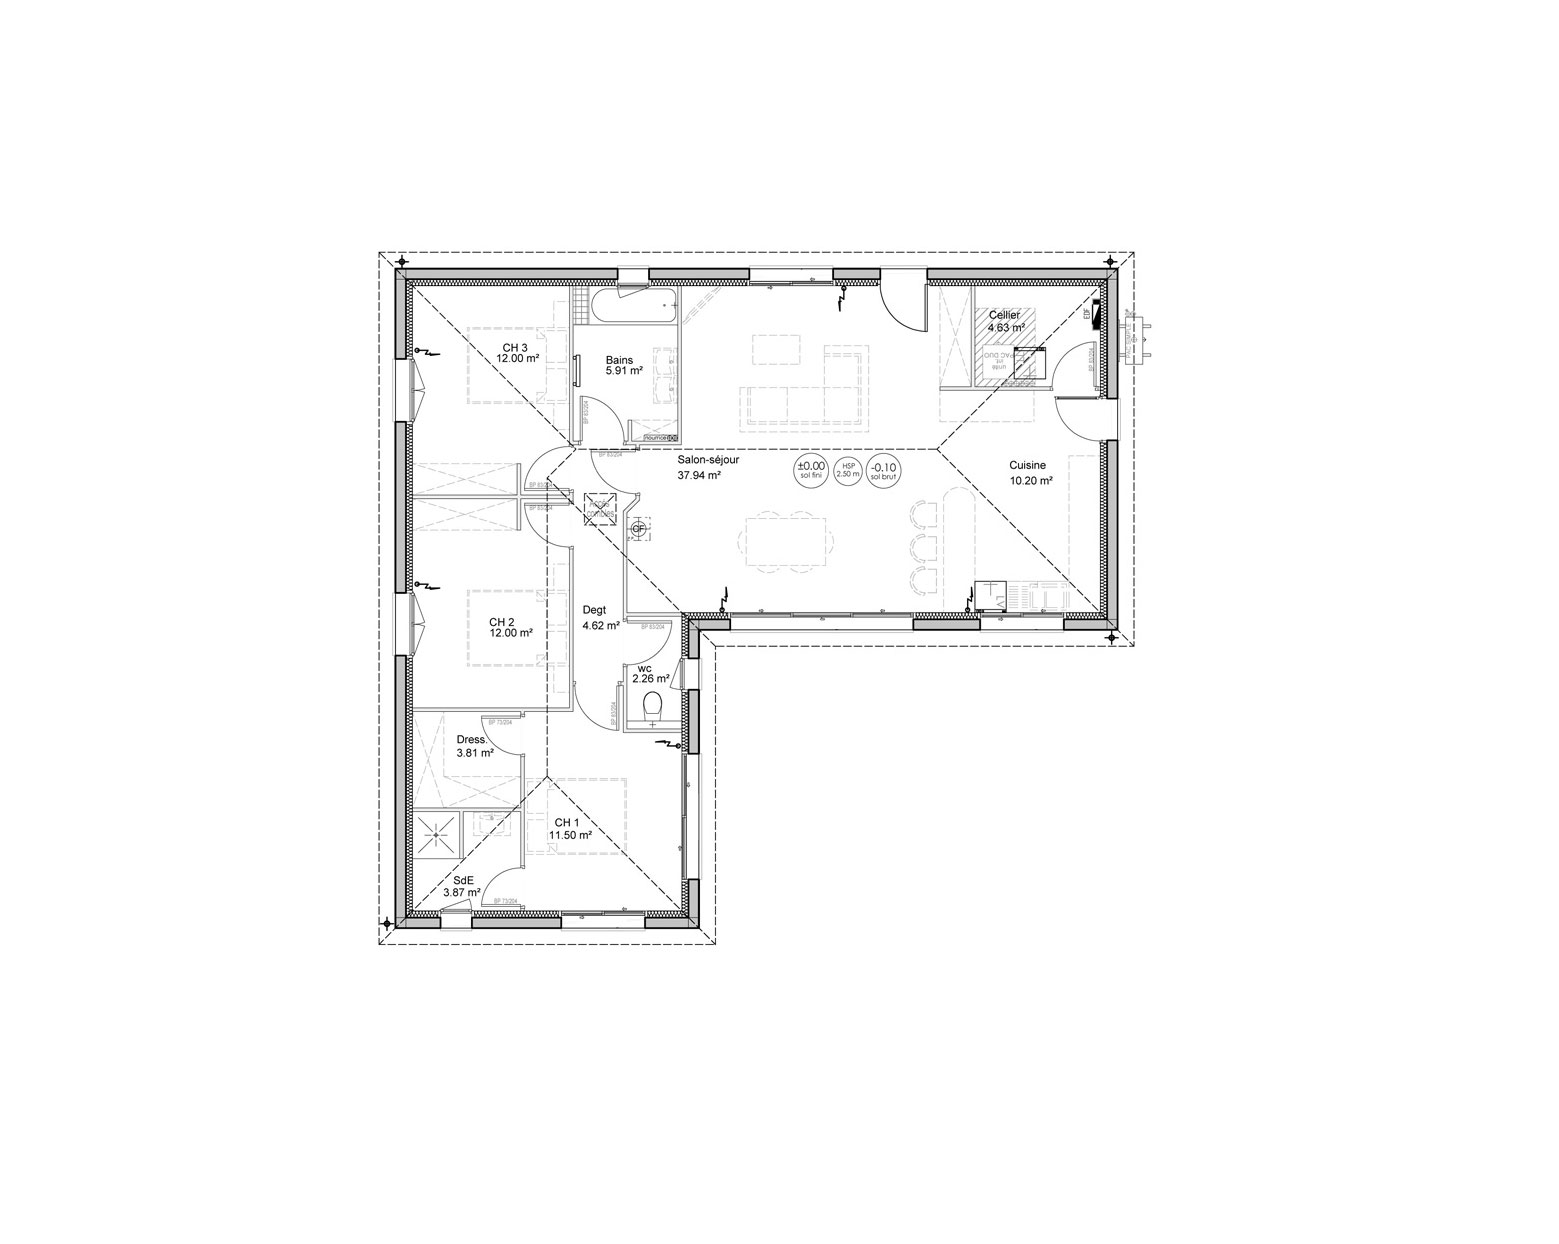 plan-maison-en-L-3-chambres-chiberta